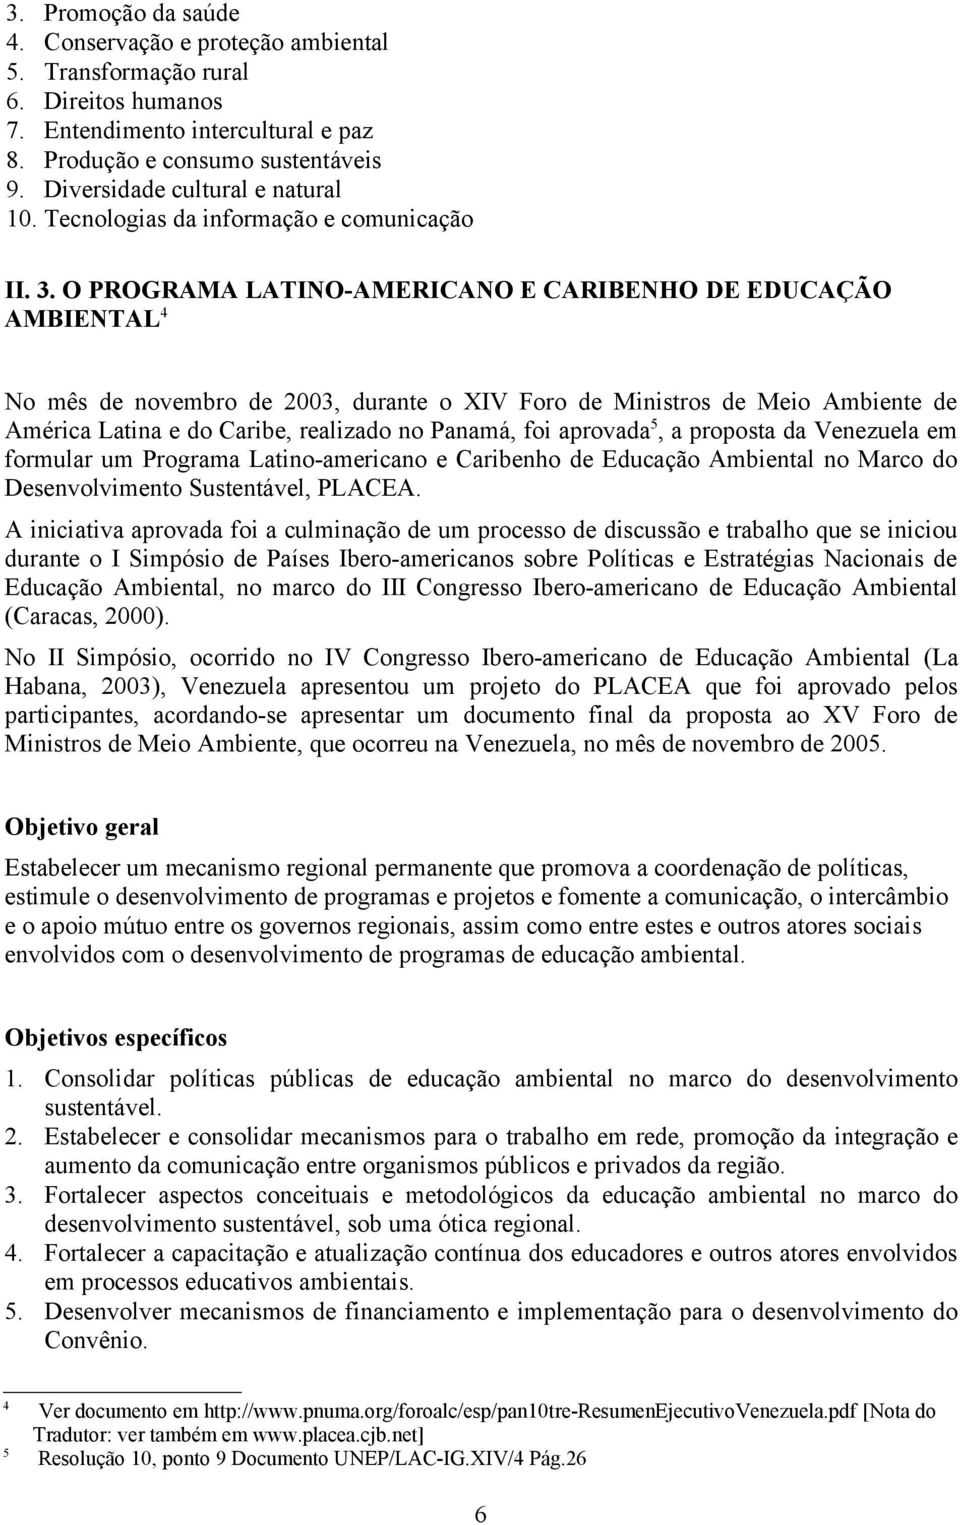 O PROGRAMA LATINO-AMERICANO E CARIBENHO DE EDUCAÇÃO AMBIENTAL 4 No mês de novembro de 2003, durante o XIV Foro de Ministros de Meio Ambiente de América Latina e do Caribe, realizado no Panamá, foi